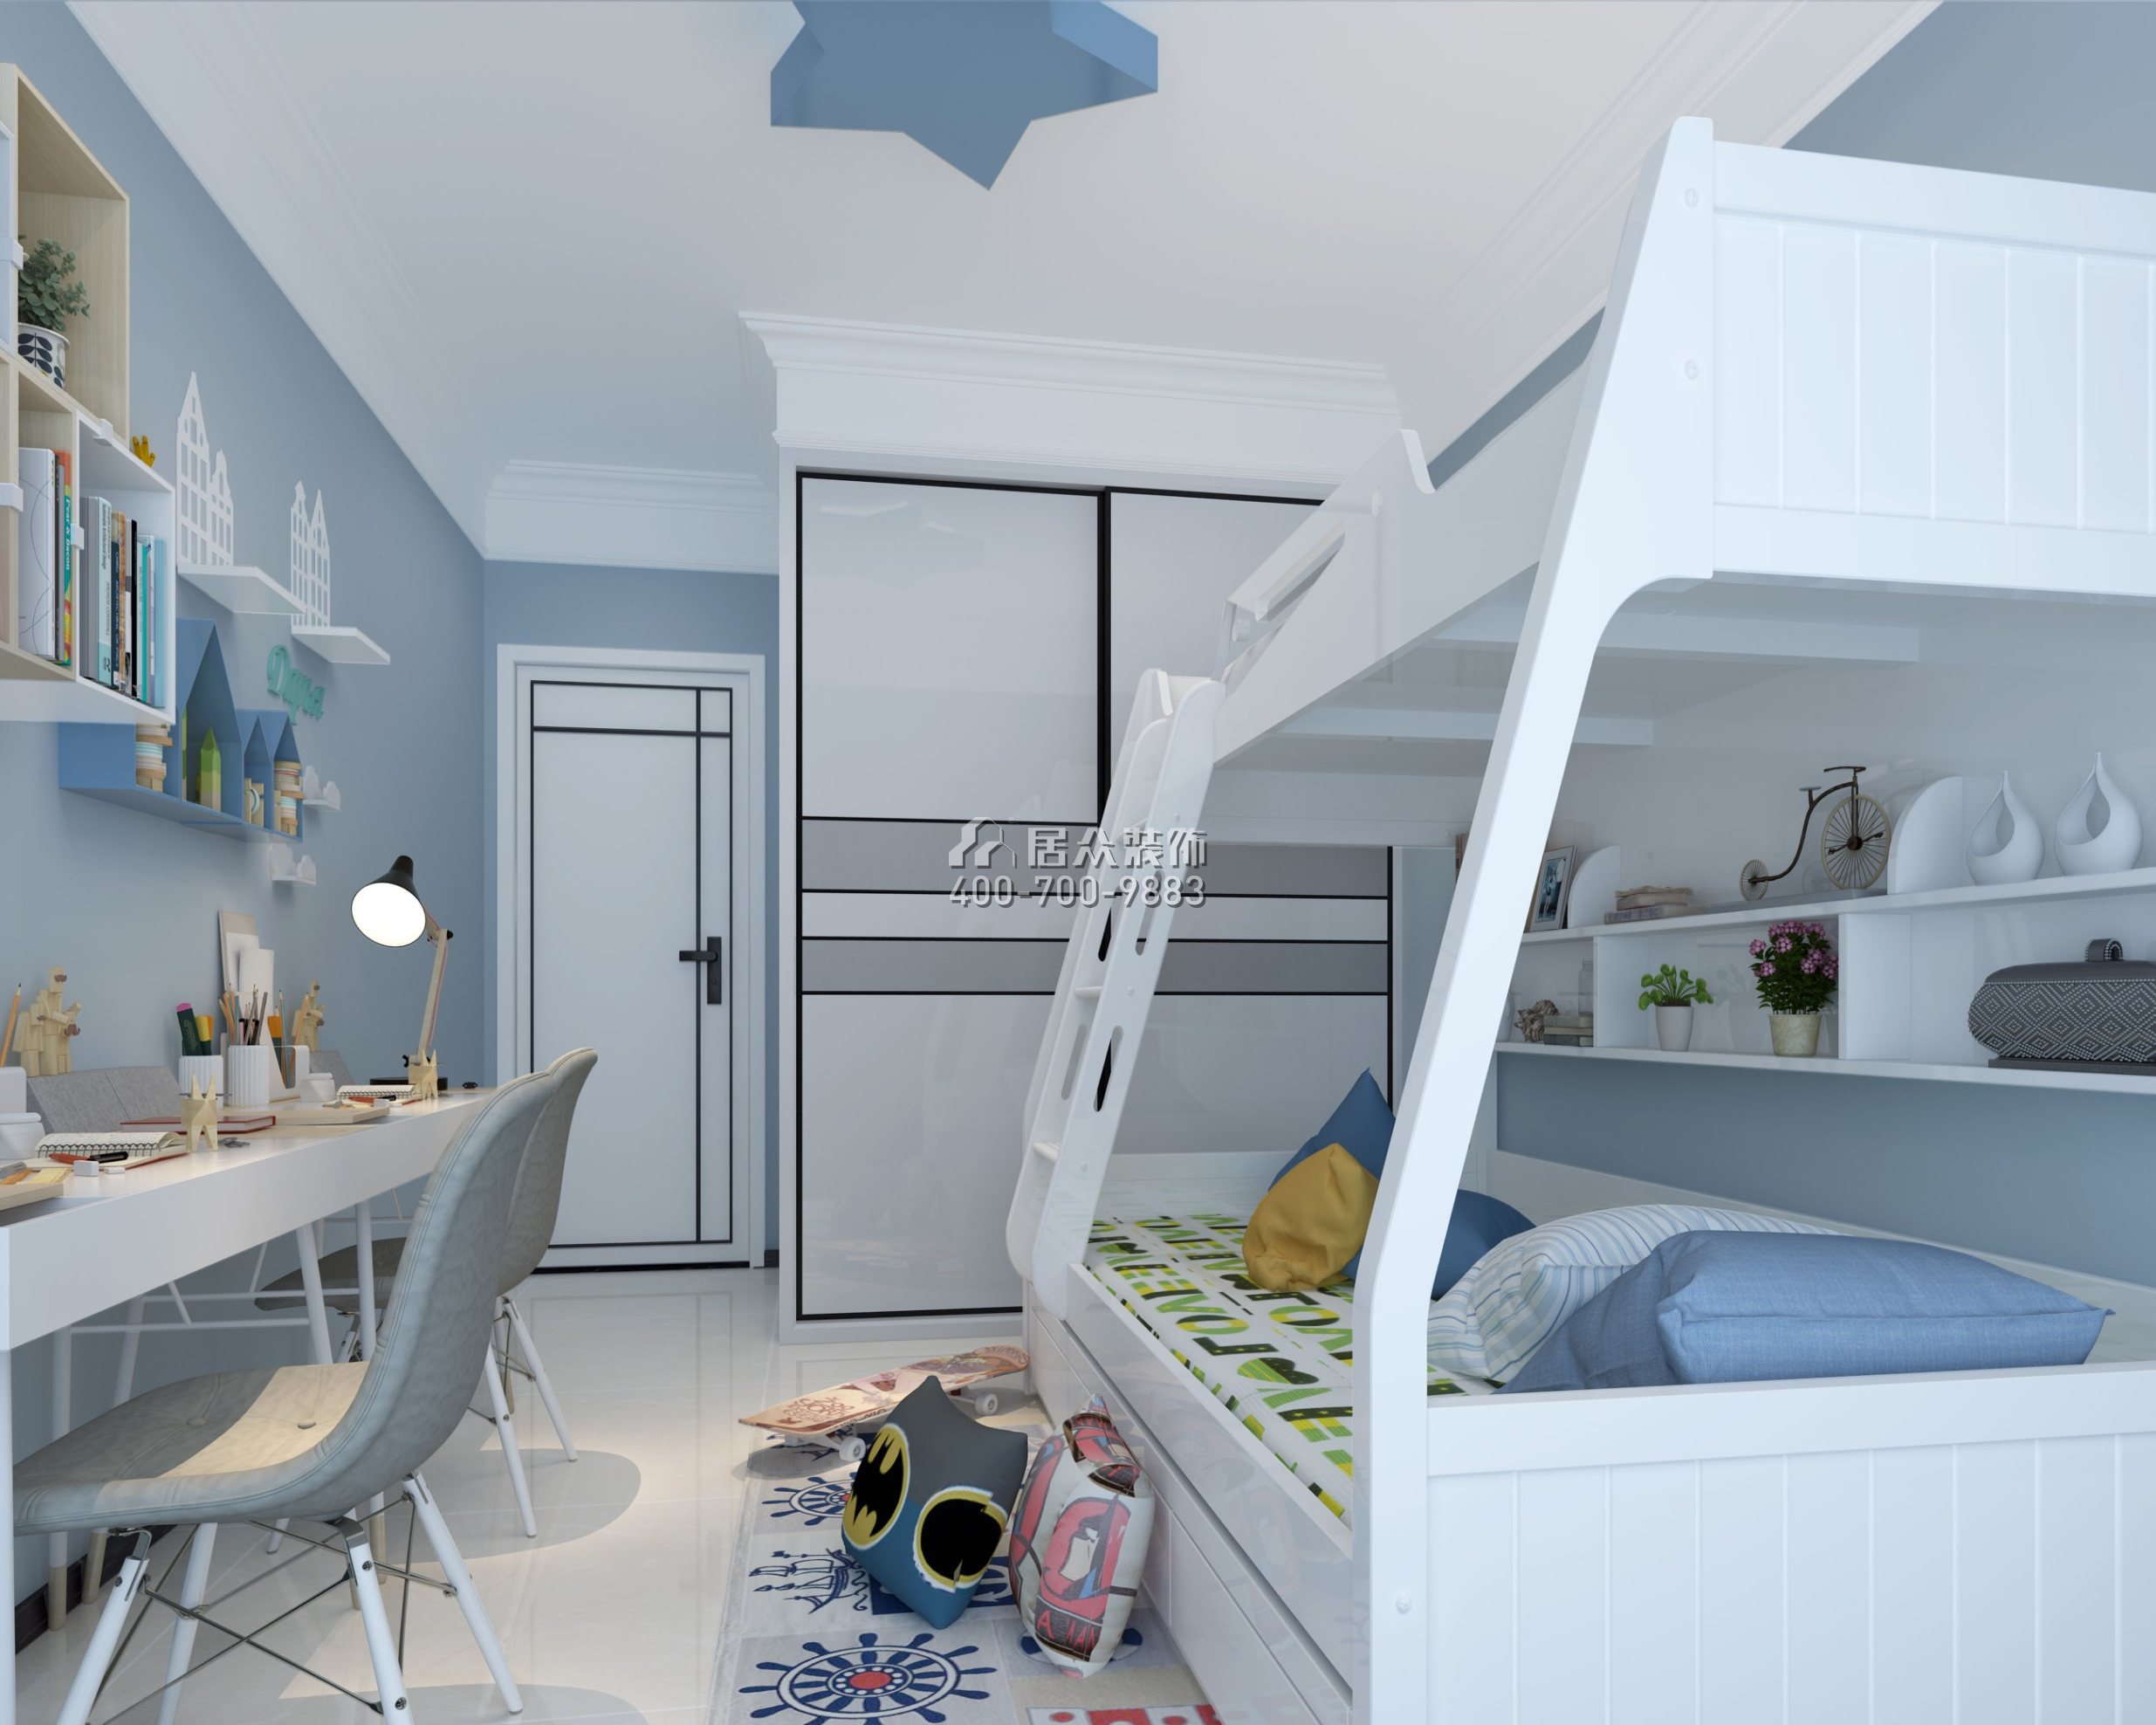 西薈城110平方米現代簡約風格平層戶型兒童房裝修效果圖